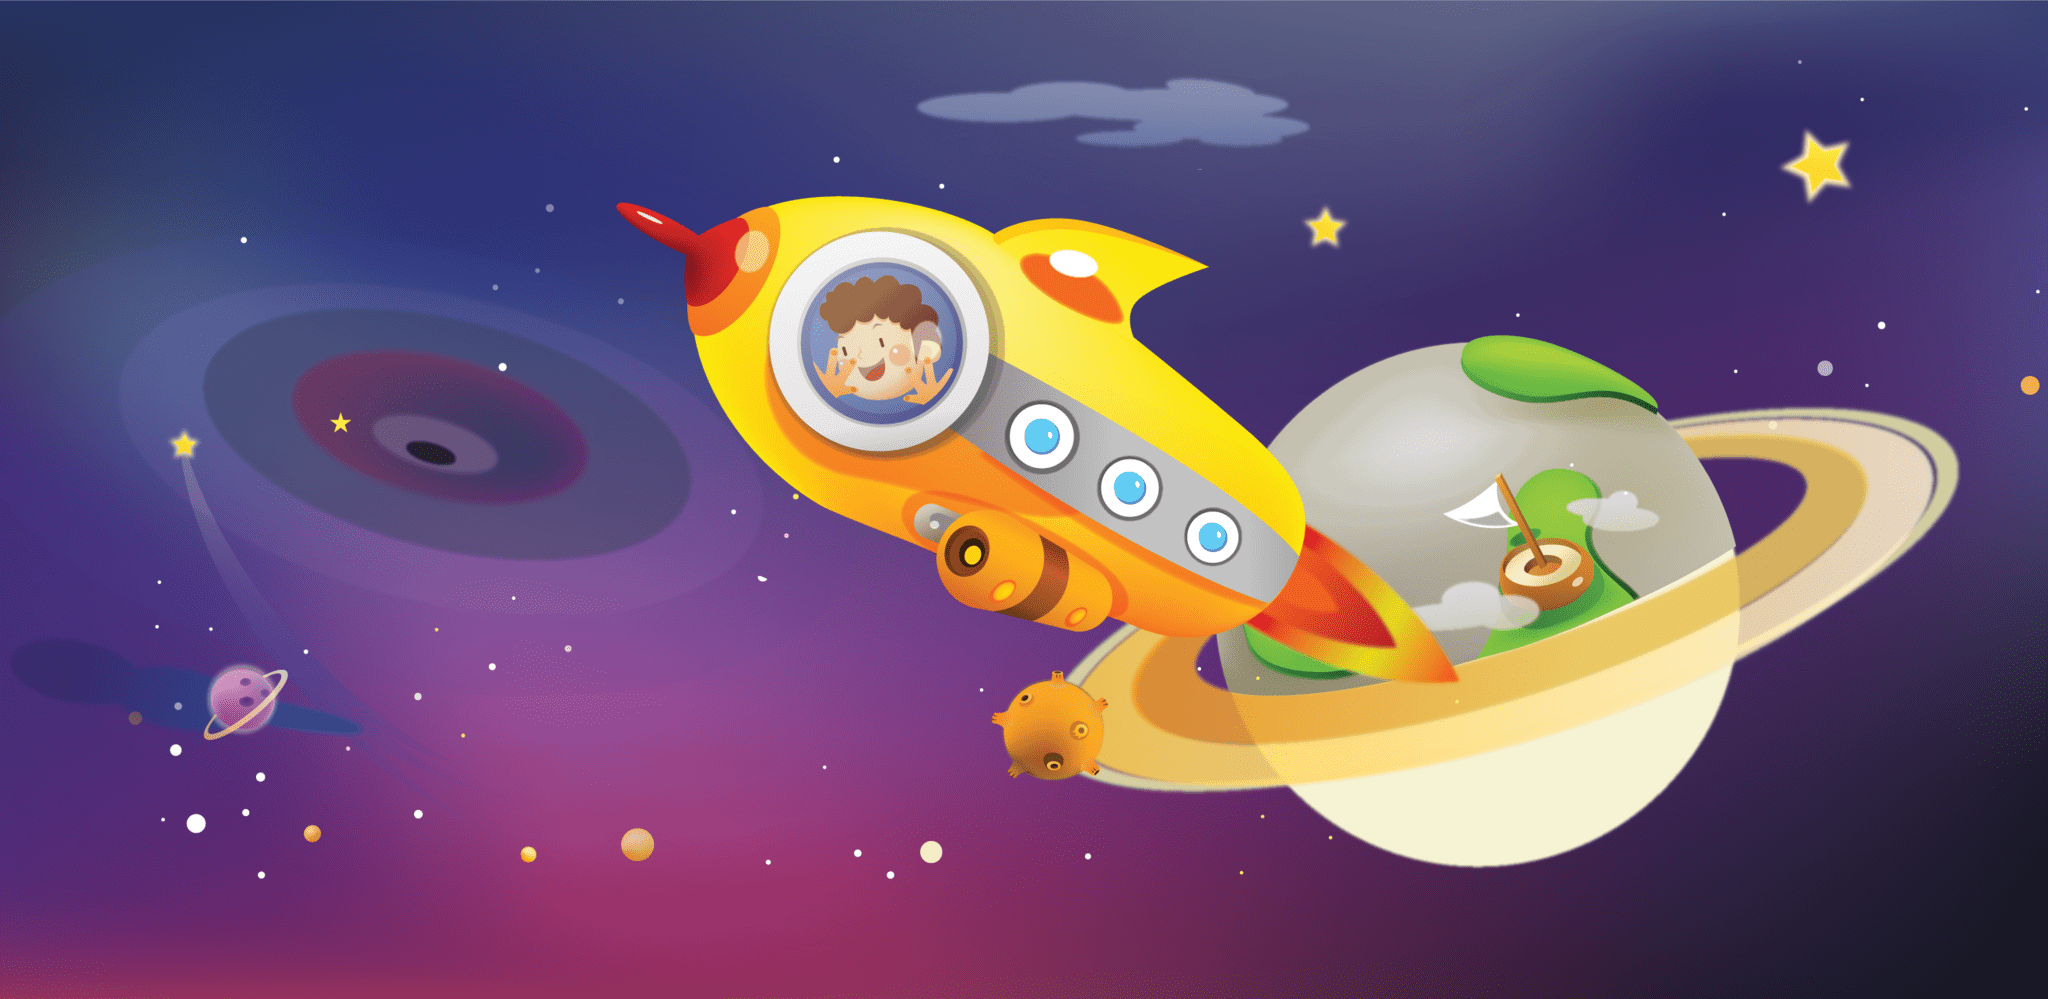 Космическое путешествие к звездам. Детям о космосе. Космическое путешествие для дошкольников. Космическая тематика для детей. Картинки на тему космос для детей.